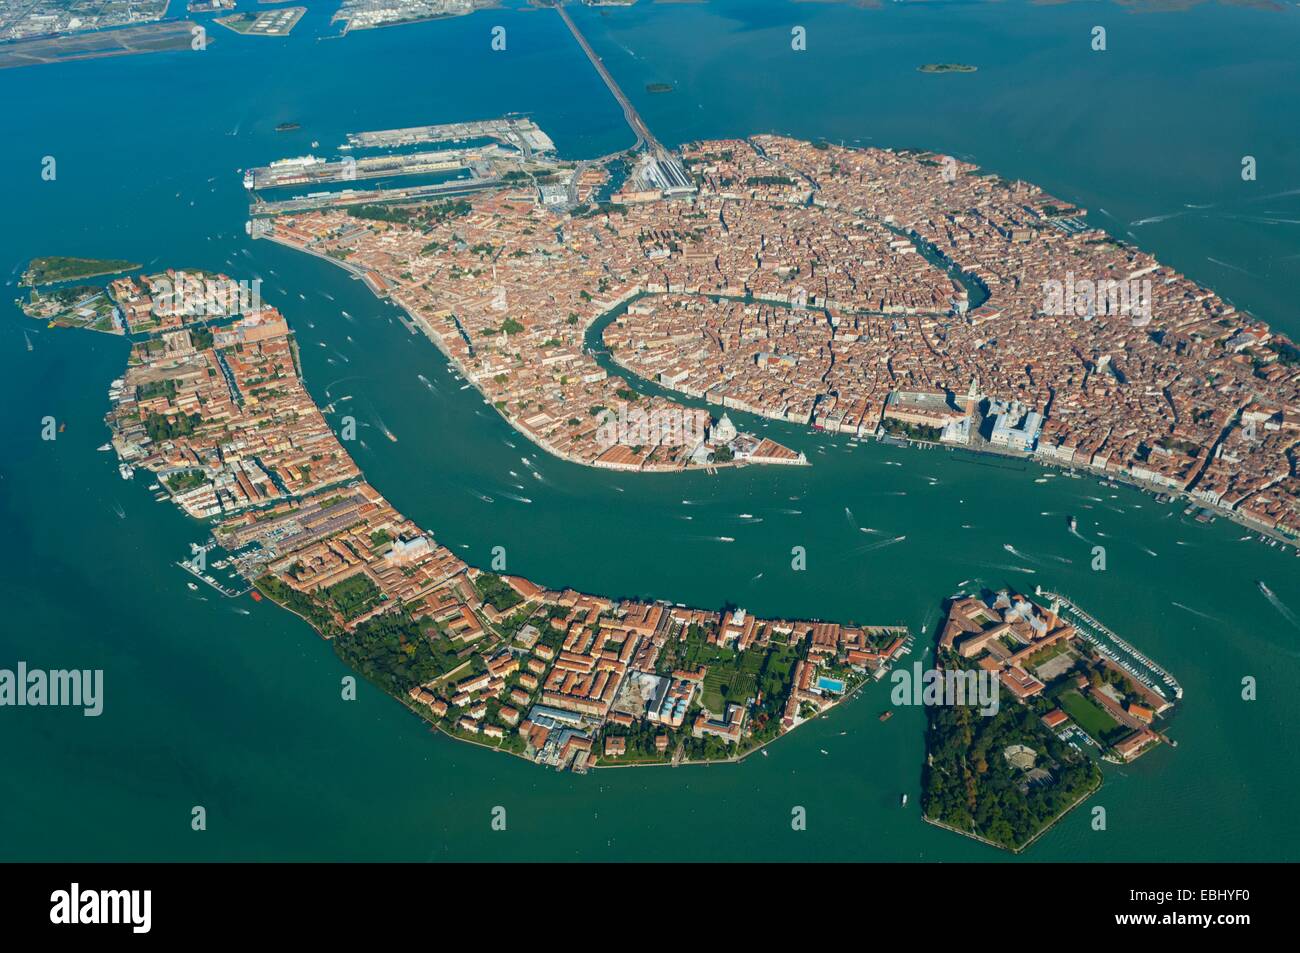 Luftaufnahme von Venedig, Guidecca und San Giorgio Maggiore Inseln,  Italien, Europa Stockfotografie - Alamy